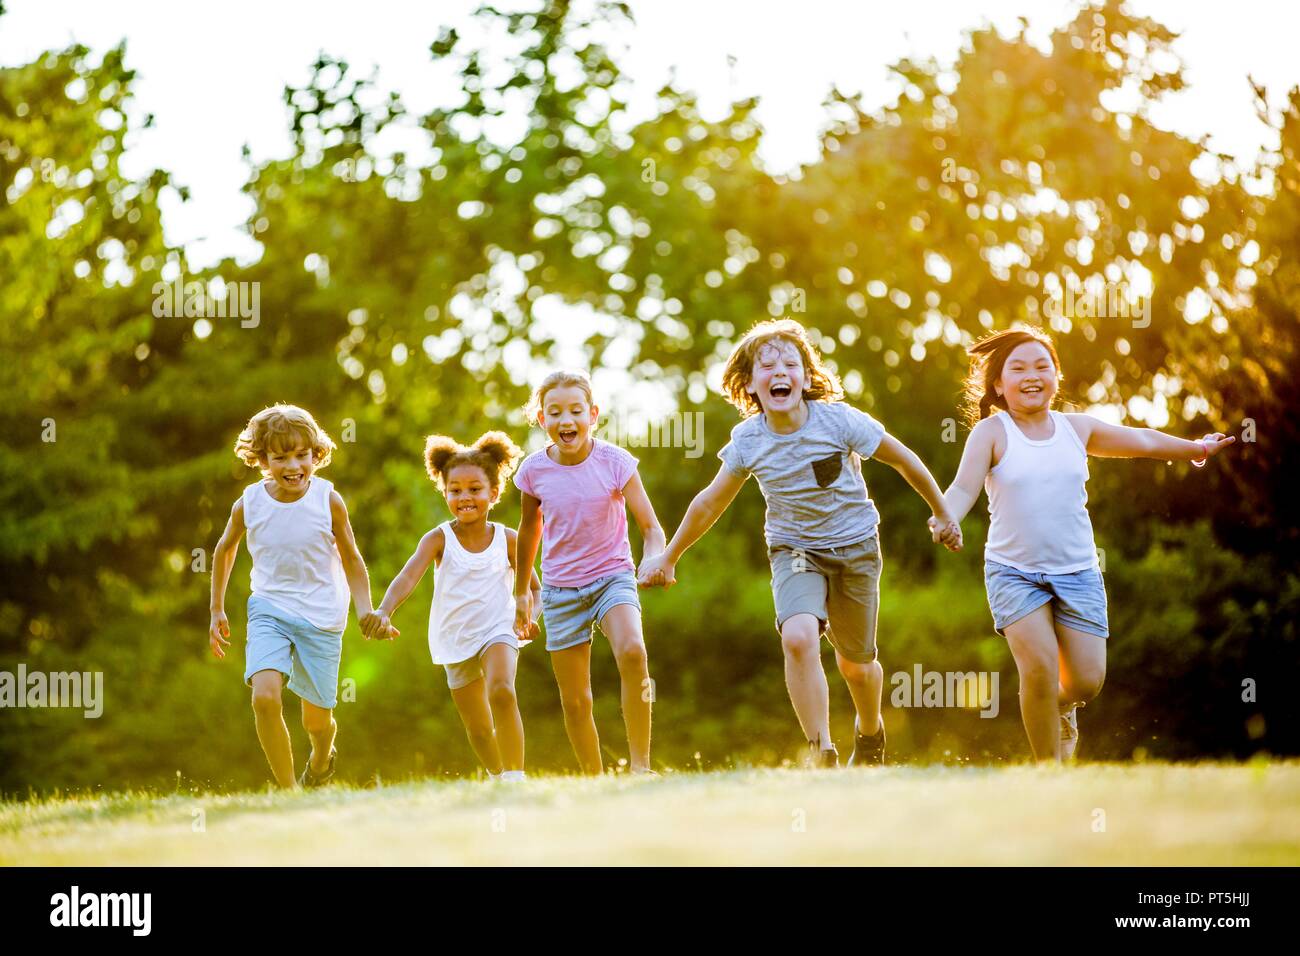 Los niños tomados de las manos y corriendo en el parque, riendo. Foto de stock